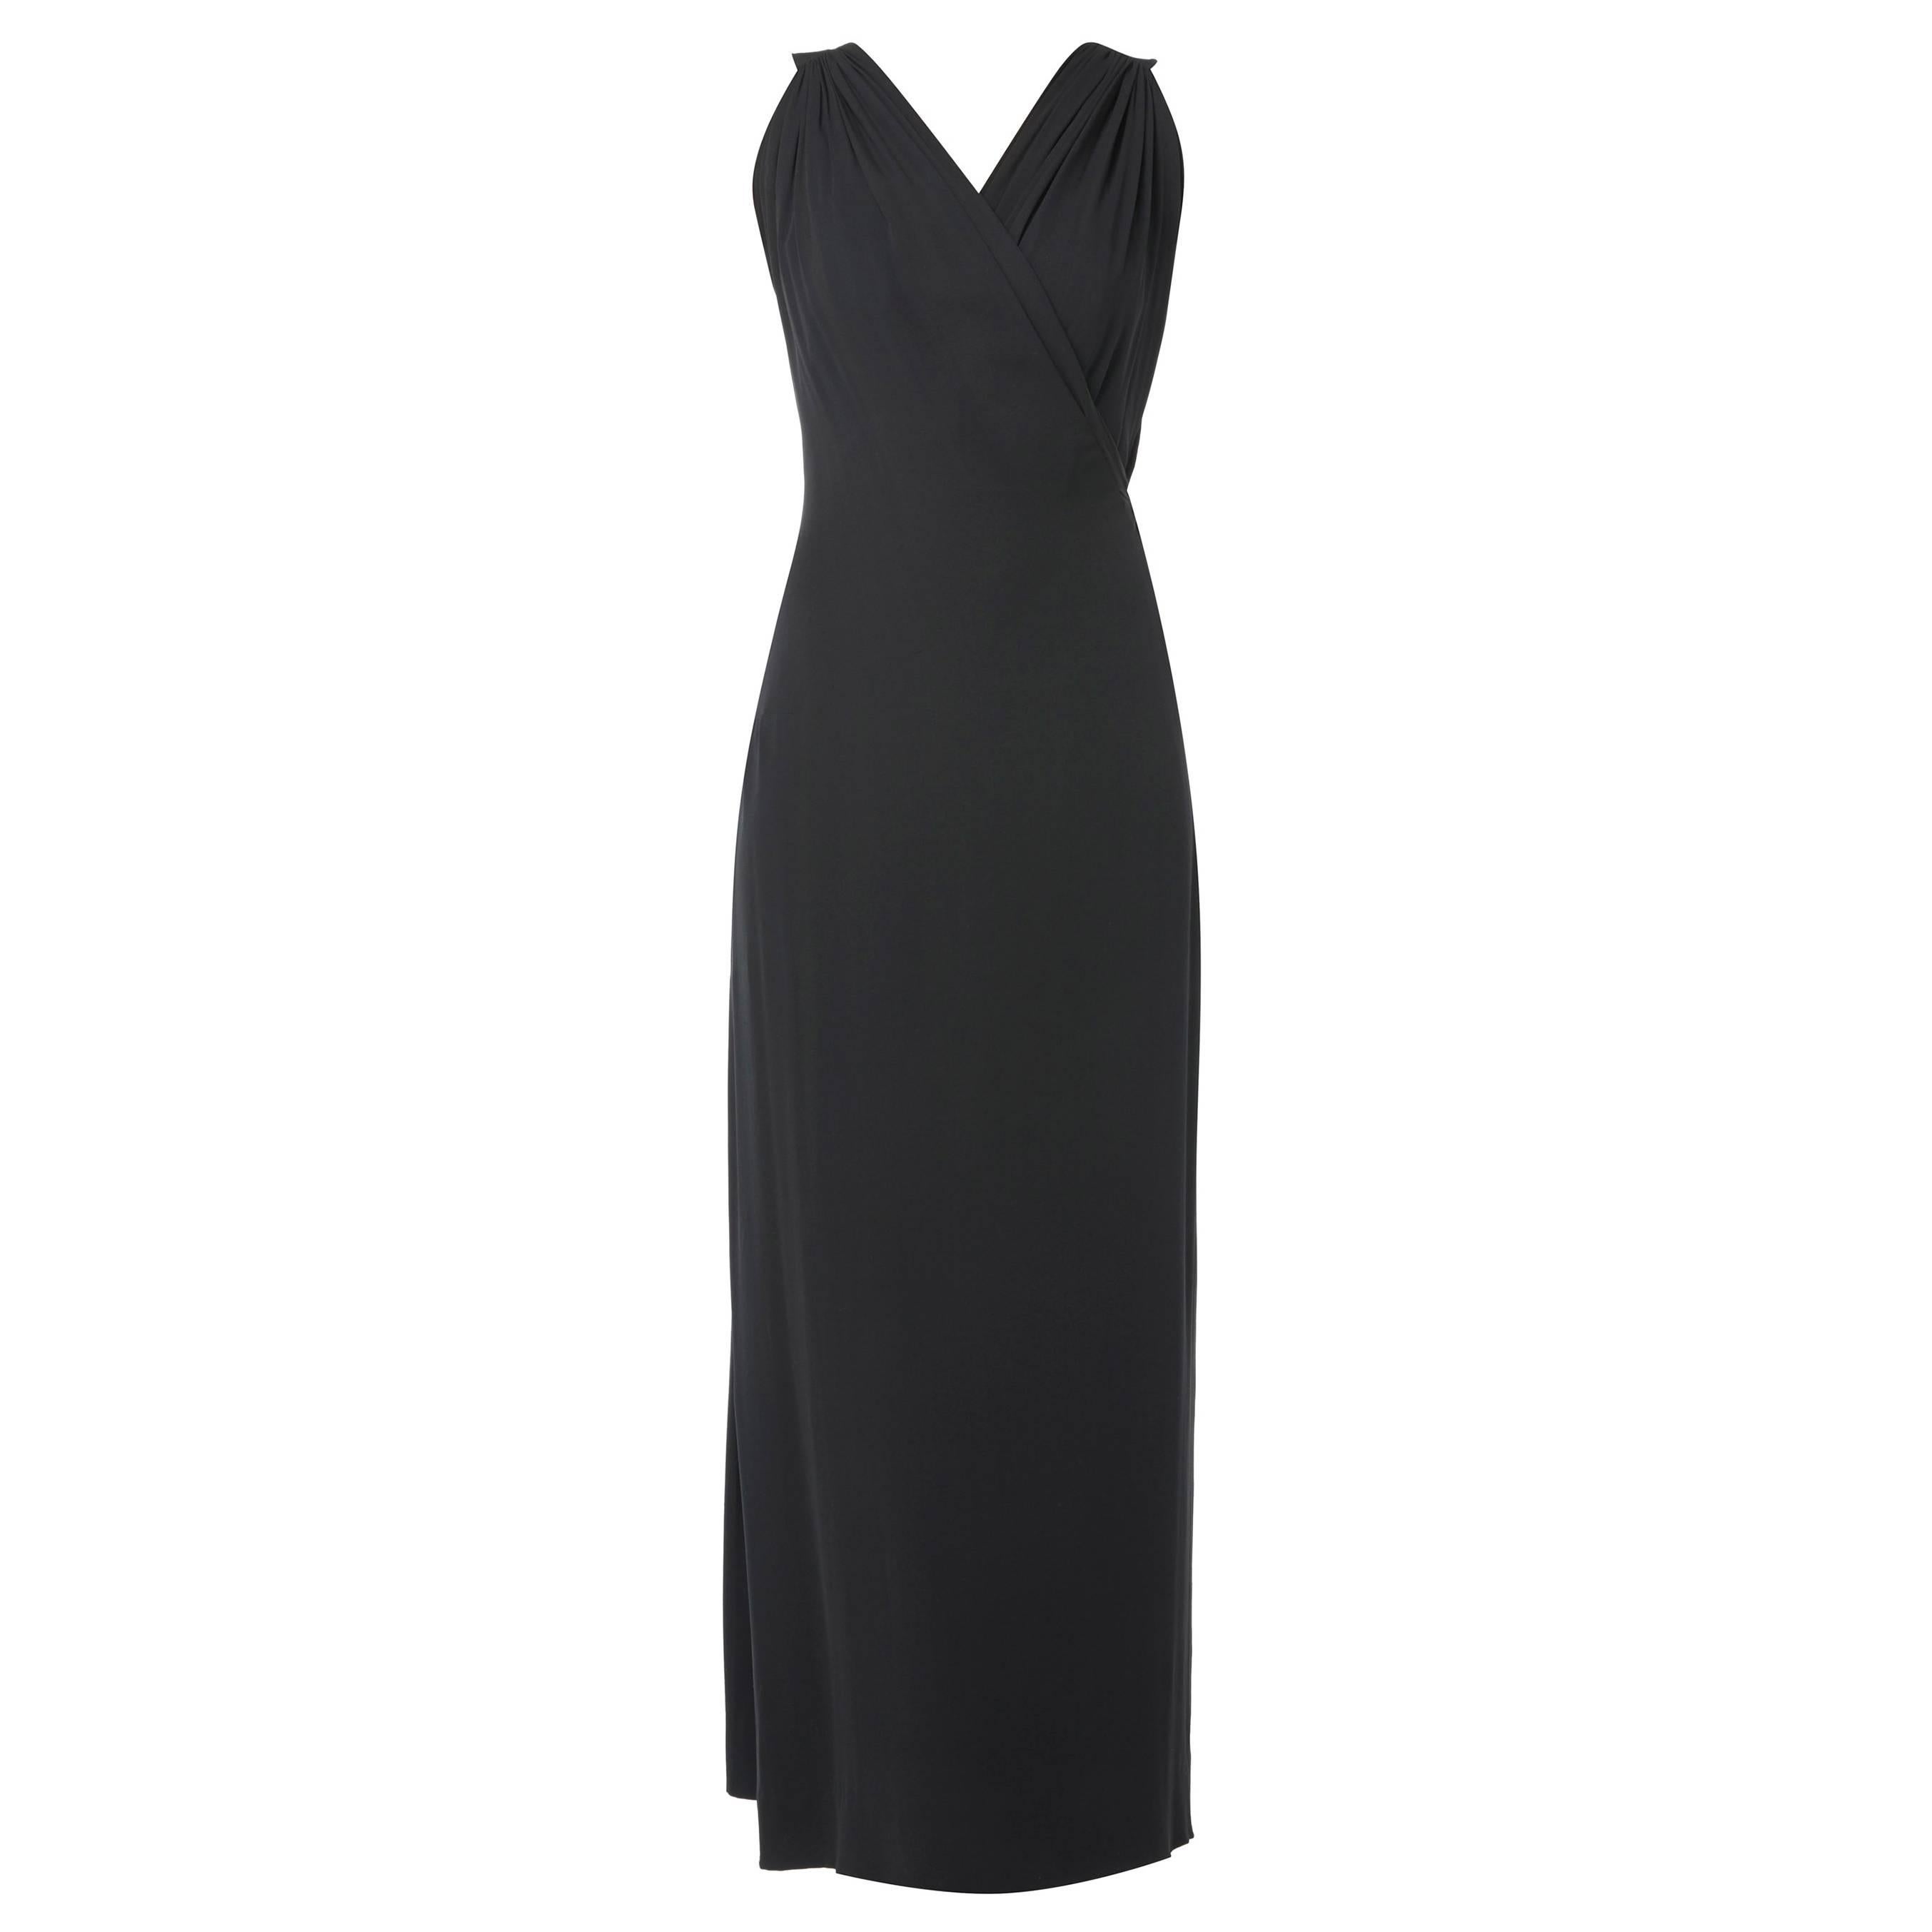 Paquin Haute couture black dress, circa 1960